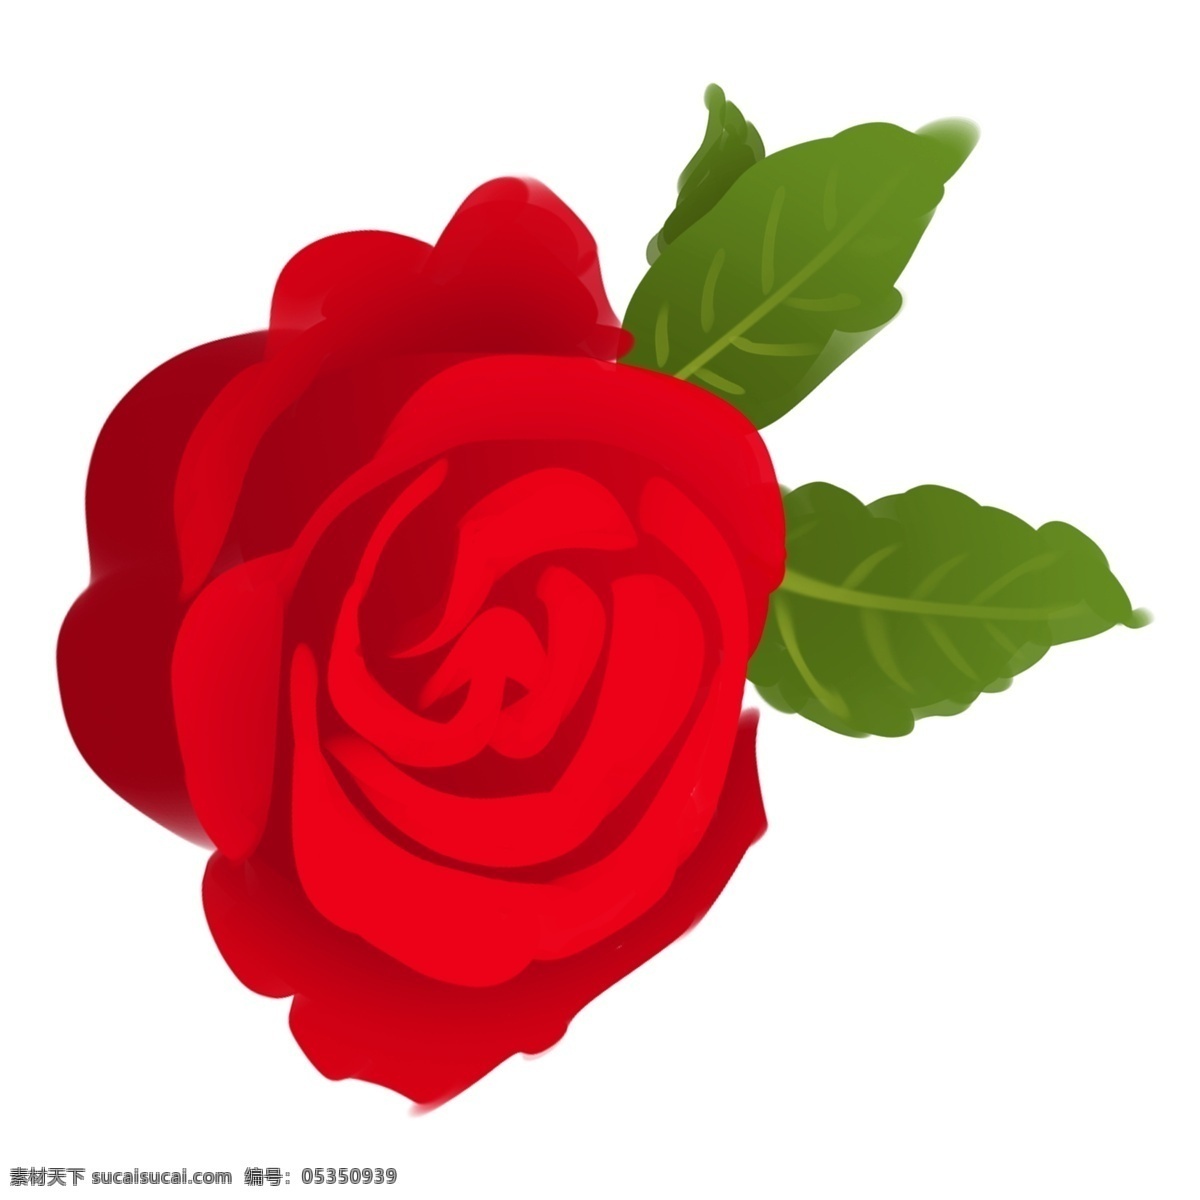 红色玫瑰花朵 玫瑰 花朵 红色